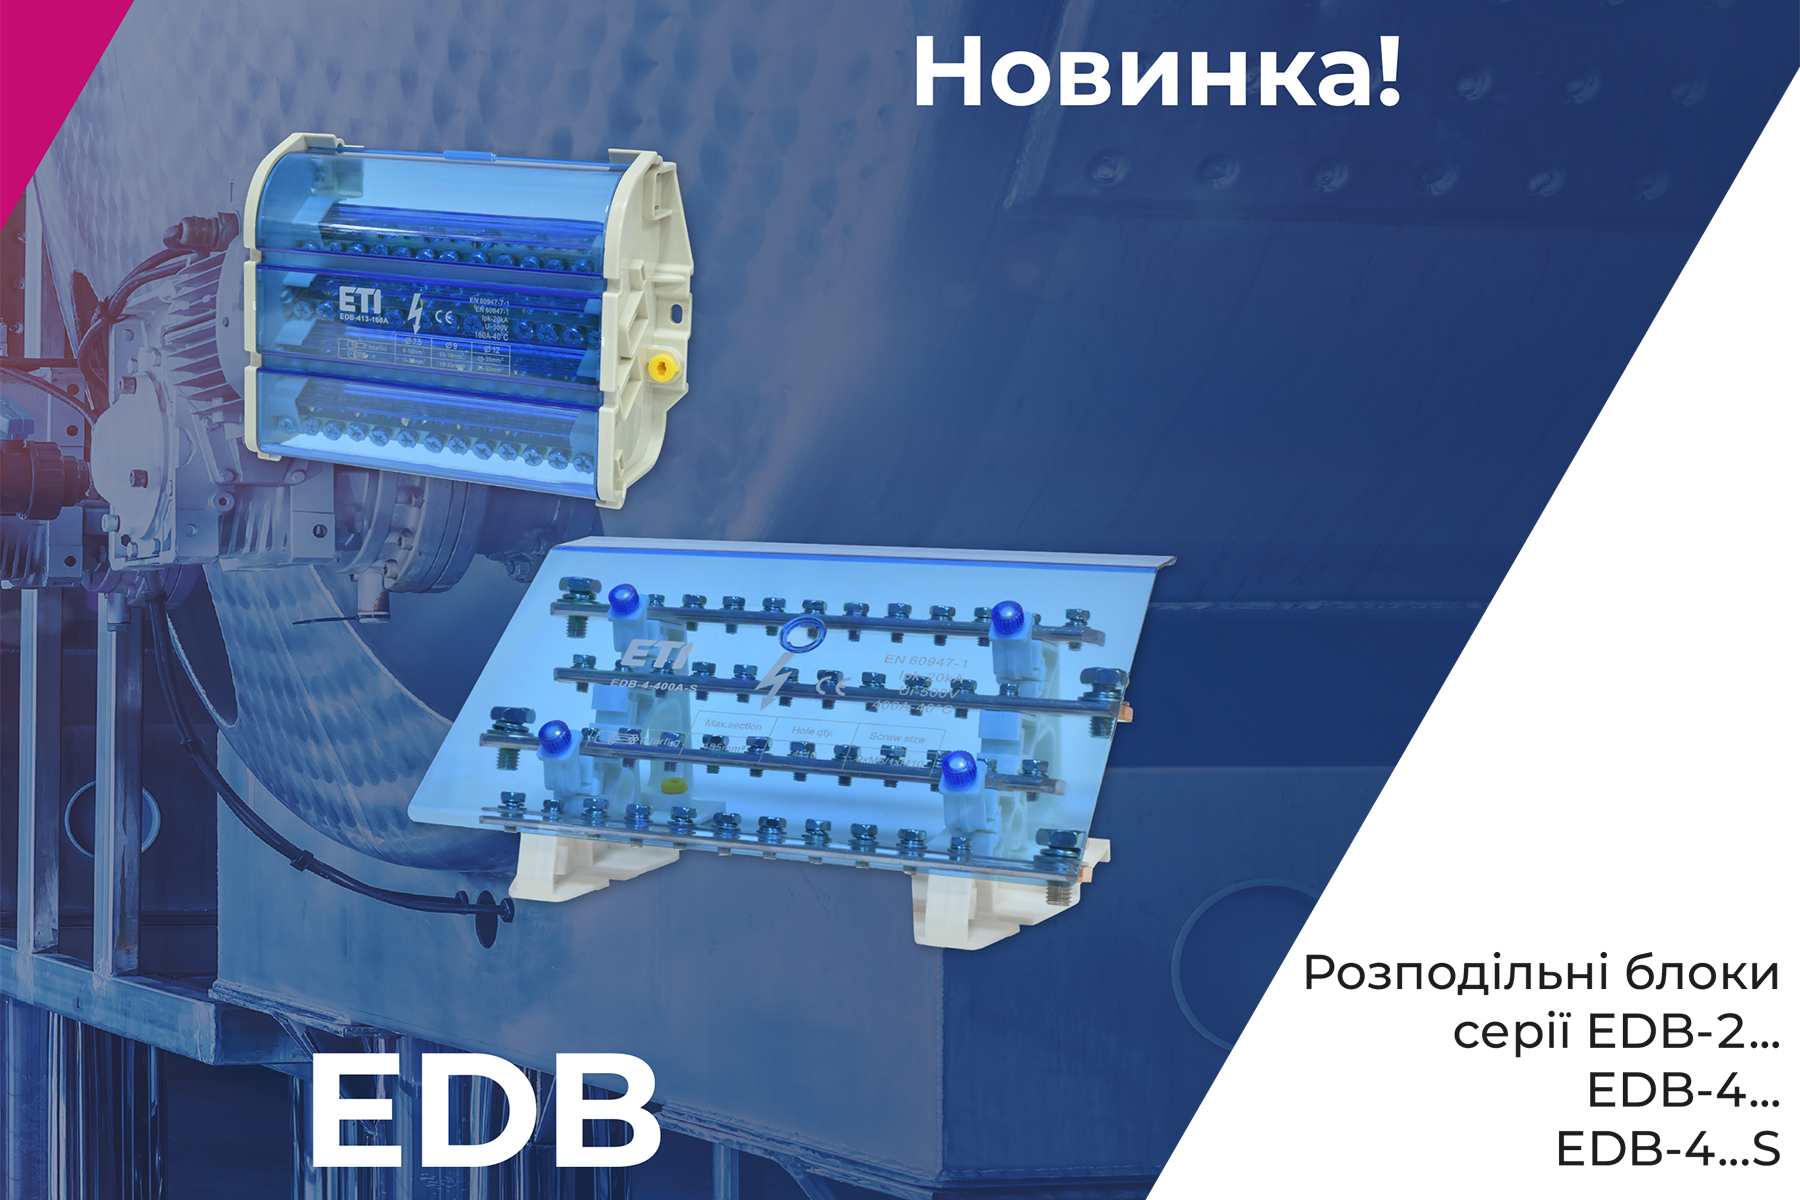 Розподільні блоки EDB-2… i EDB-4…